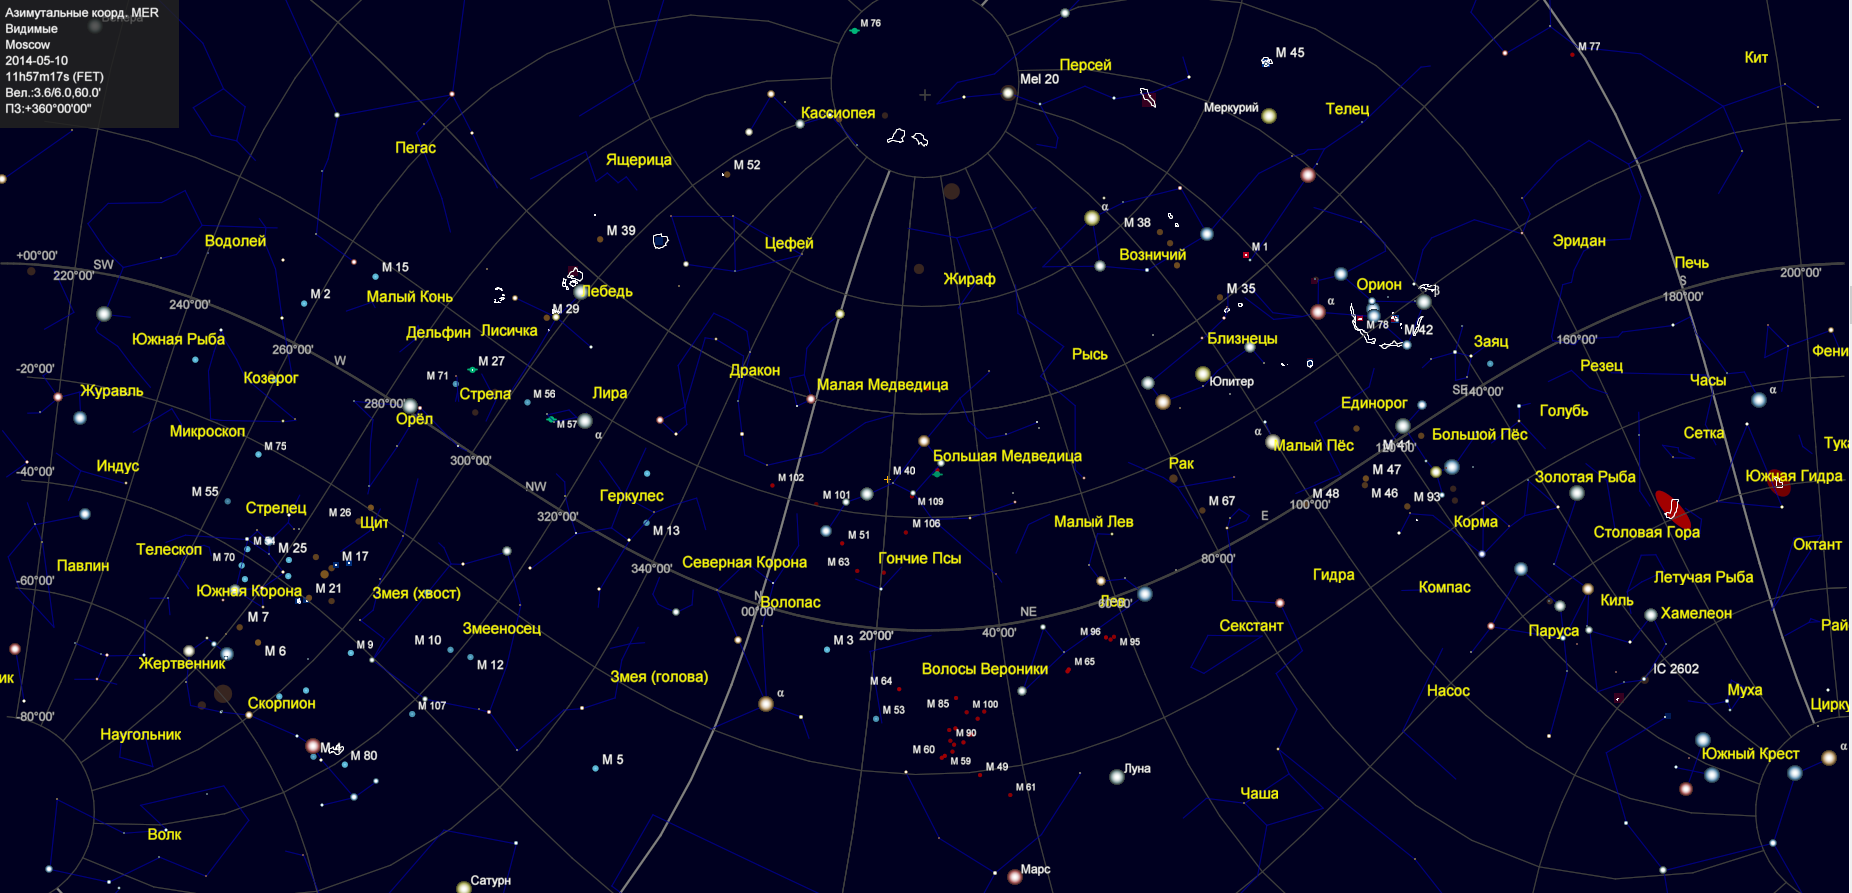 Как называется северное созвездие. Созвездие Плеяды на карте звездного неба. Карта звездного неба с названиями звезд Северного полушария. Полярная звезда на карте звездного неба Северного полушария. Карта звездного неба 88 созвездий.